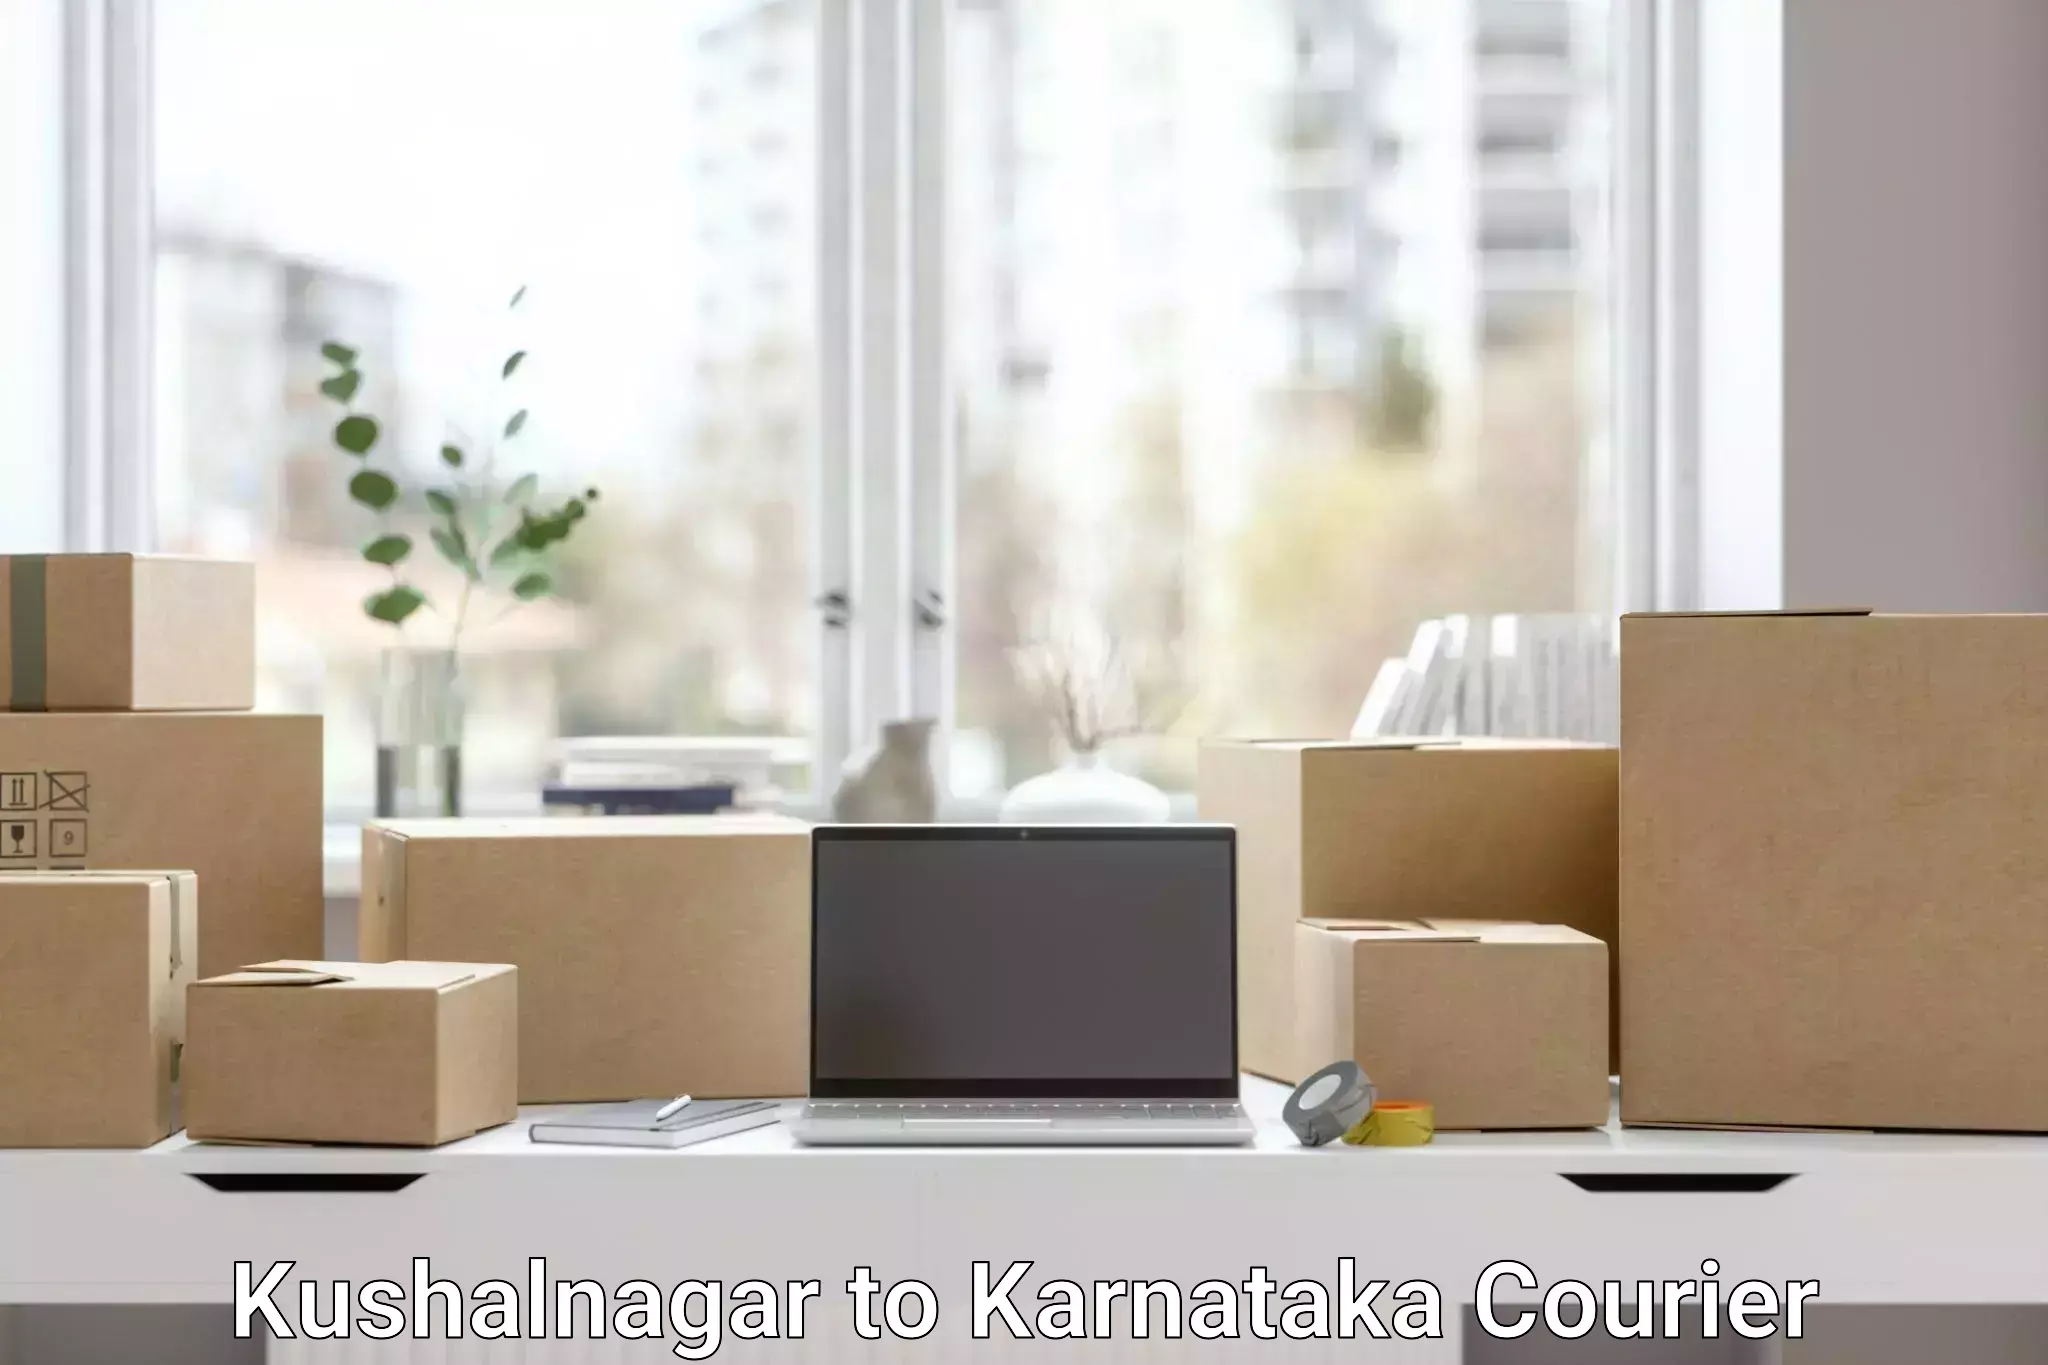 On-demand courier Kushalnagar to Mangalore